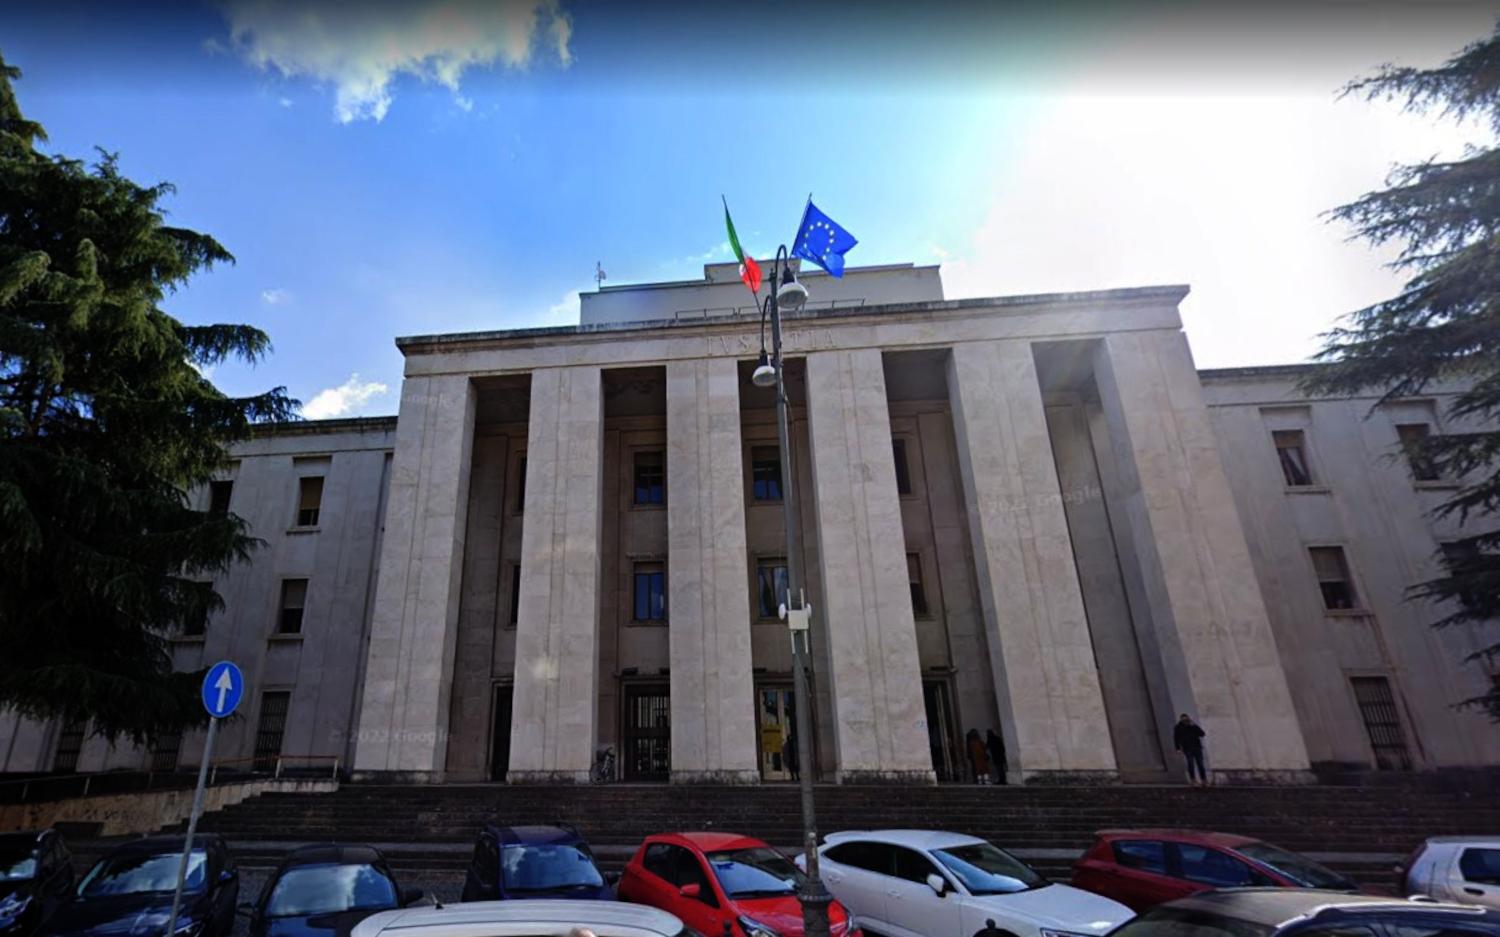 Il giudice del Tribunale di Ascoli Piceno Paola Mariani respinge la richiesta di sfratto per il Palazzo di Giustizia